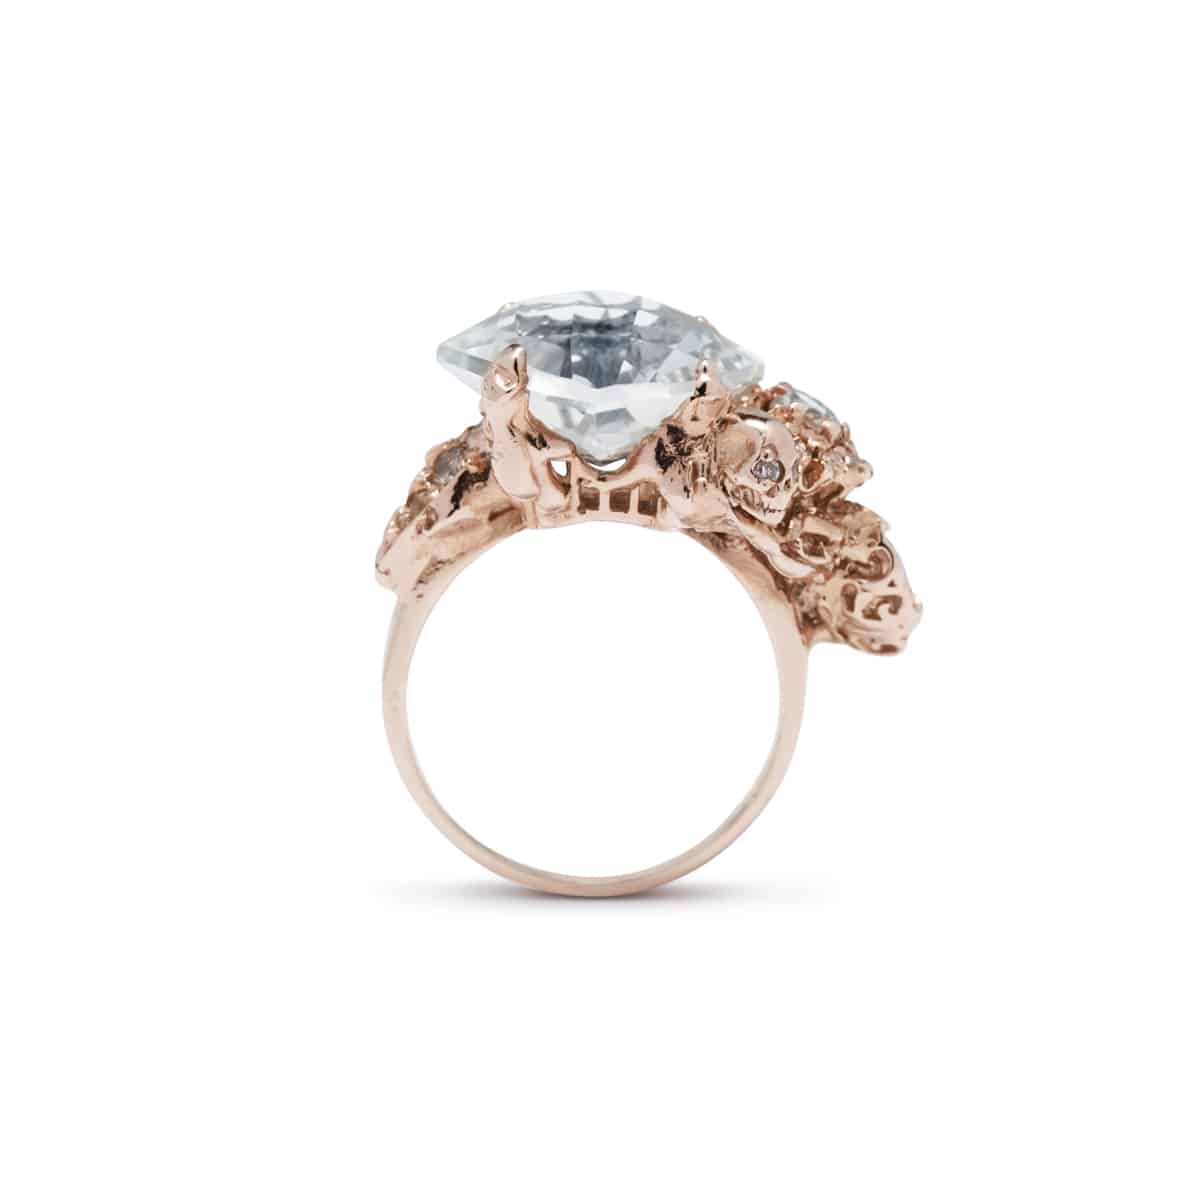 Julia deVille - unique engagement and wedding rings ...